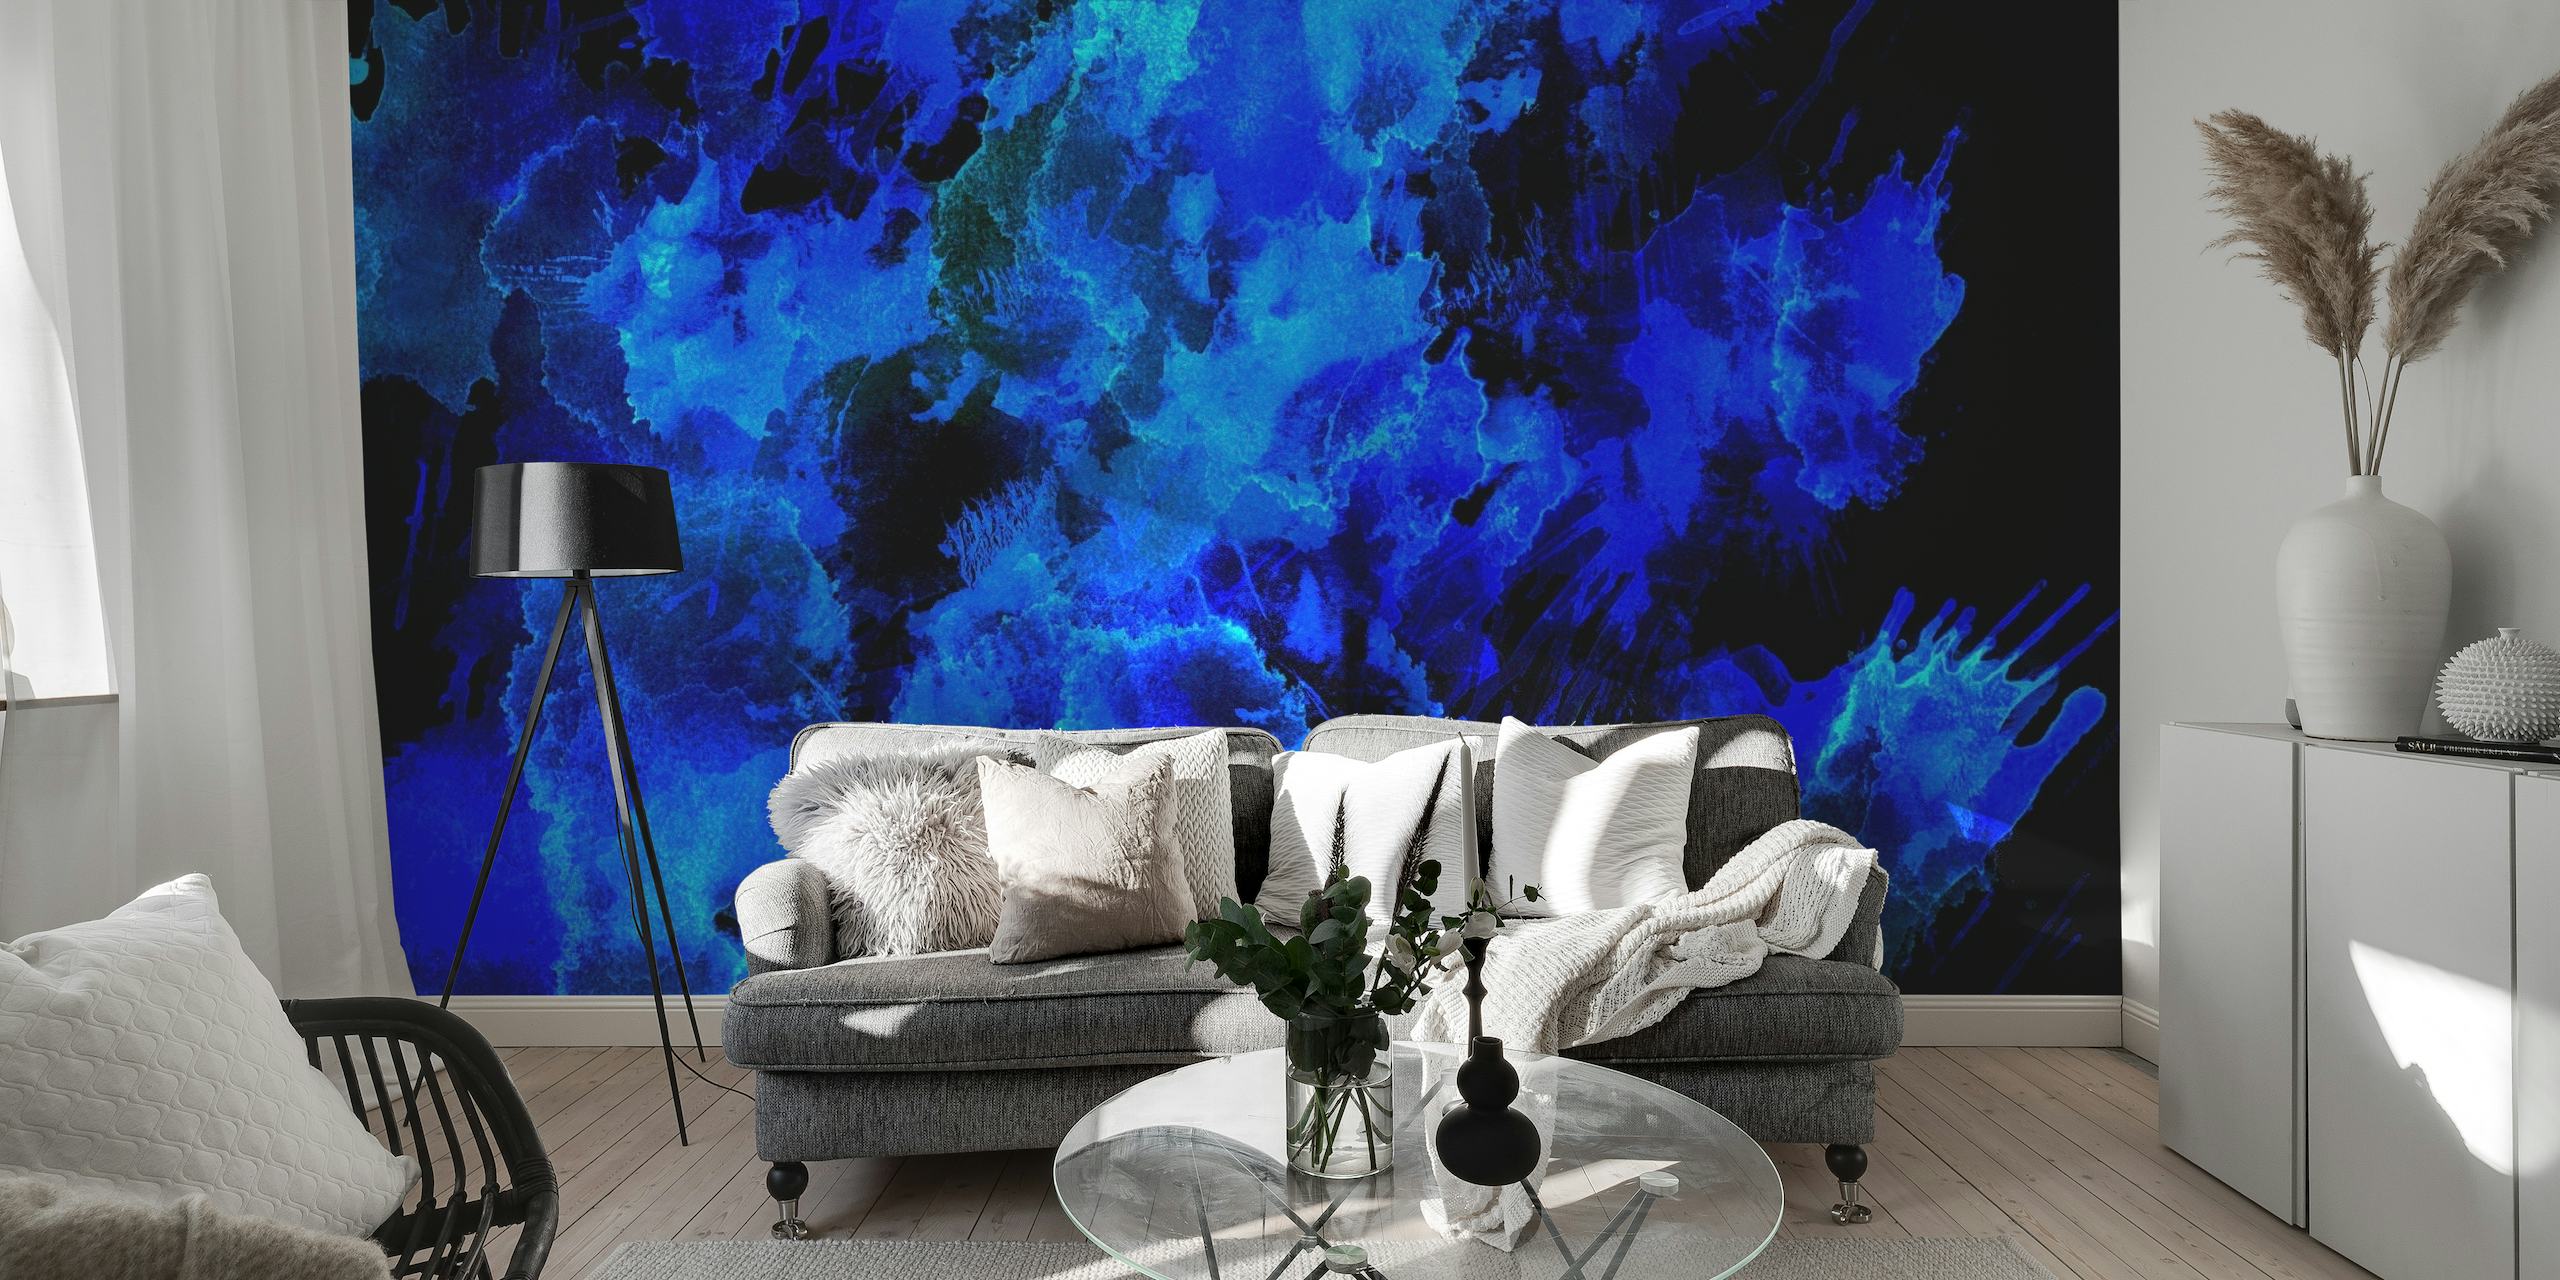 Abstraktní nástěnná malba v modrých odstínech připomínající krásu noční oblohy nebo hlubin oceánu